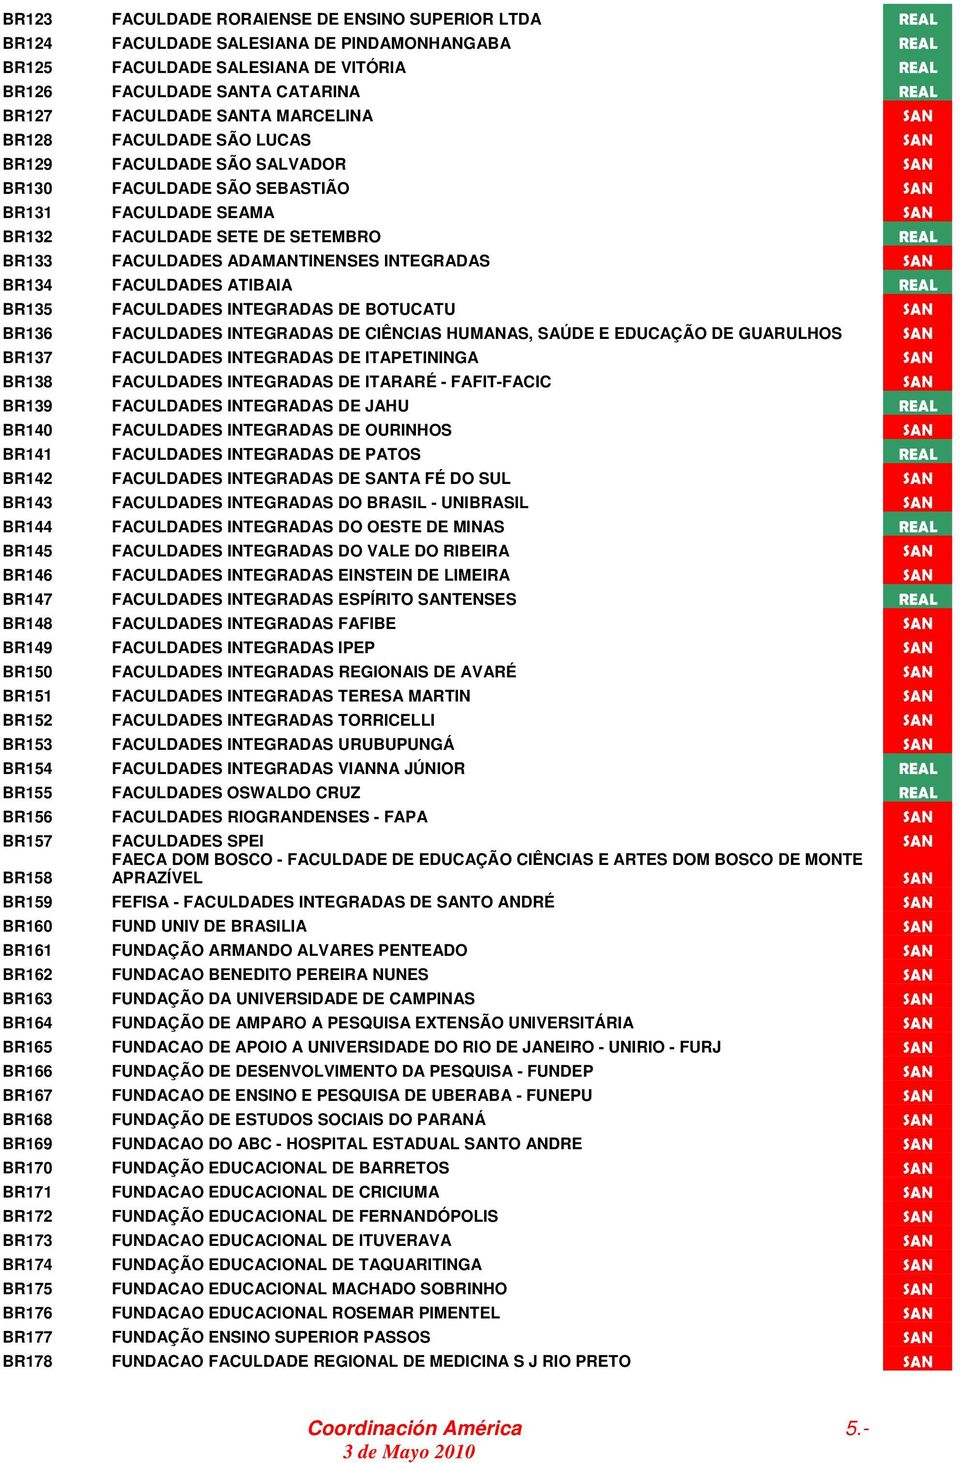 ADAMANTINENSES INTEGRADAS SAN BR134 FACULDADES ATIBAIA REAL BR135 FACULDADES INTEGRADAS DE BOTUCATU SAN BR136 FACULDADES INTEGRADAS DE CIÊNCIAS HUMANAS, SAÚDE E EDUCAÇÃO DE GUARULHOS SAN BR137